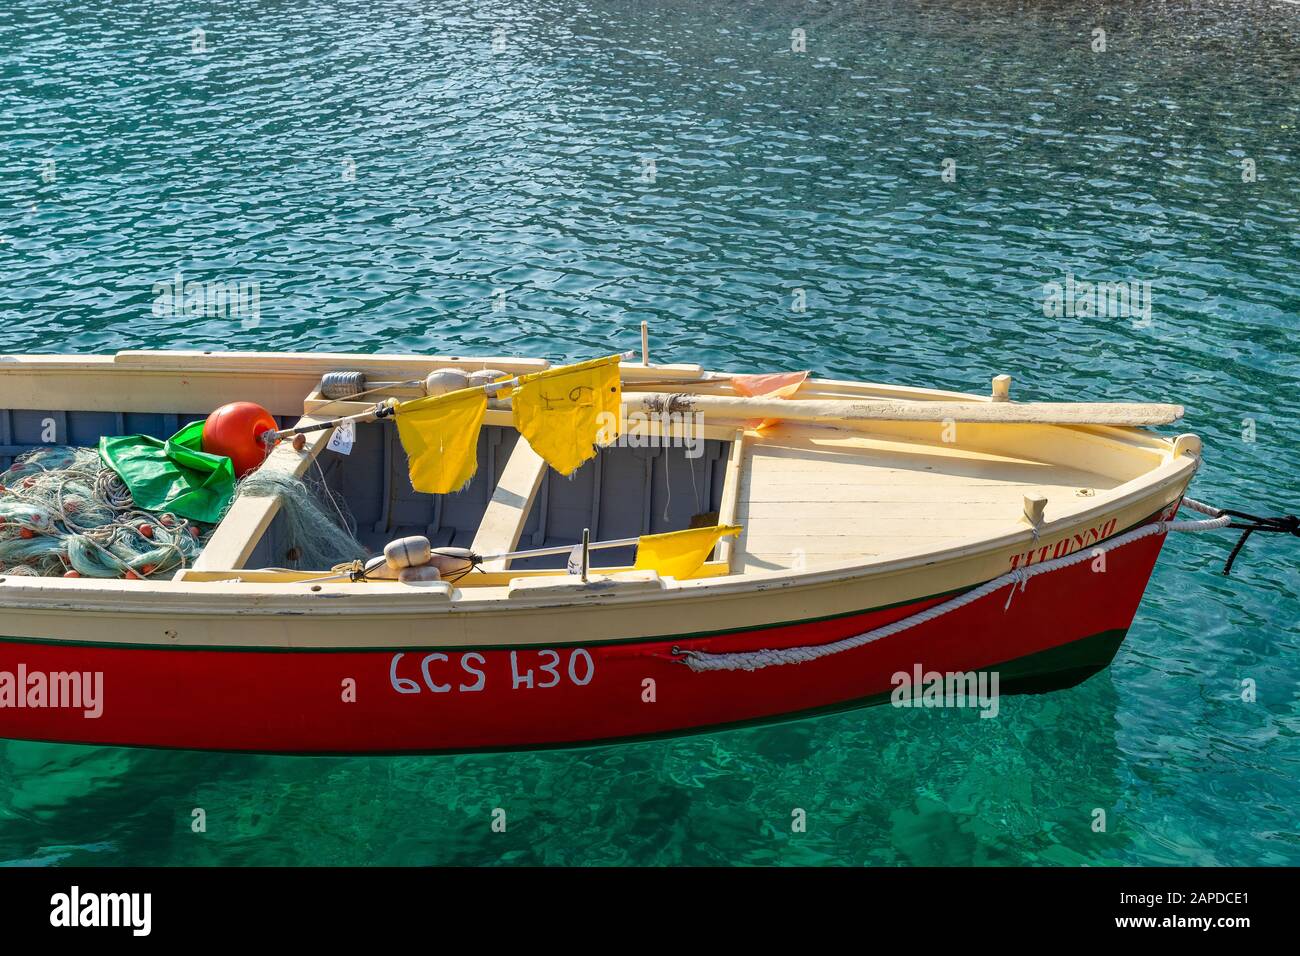 Parte di una piccola barca da pesca dipinta in rosso brillante, beige e verde nelle acque blu della costa mediterranea in una giornata di sole. Sono presenti padd Foto Stock